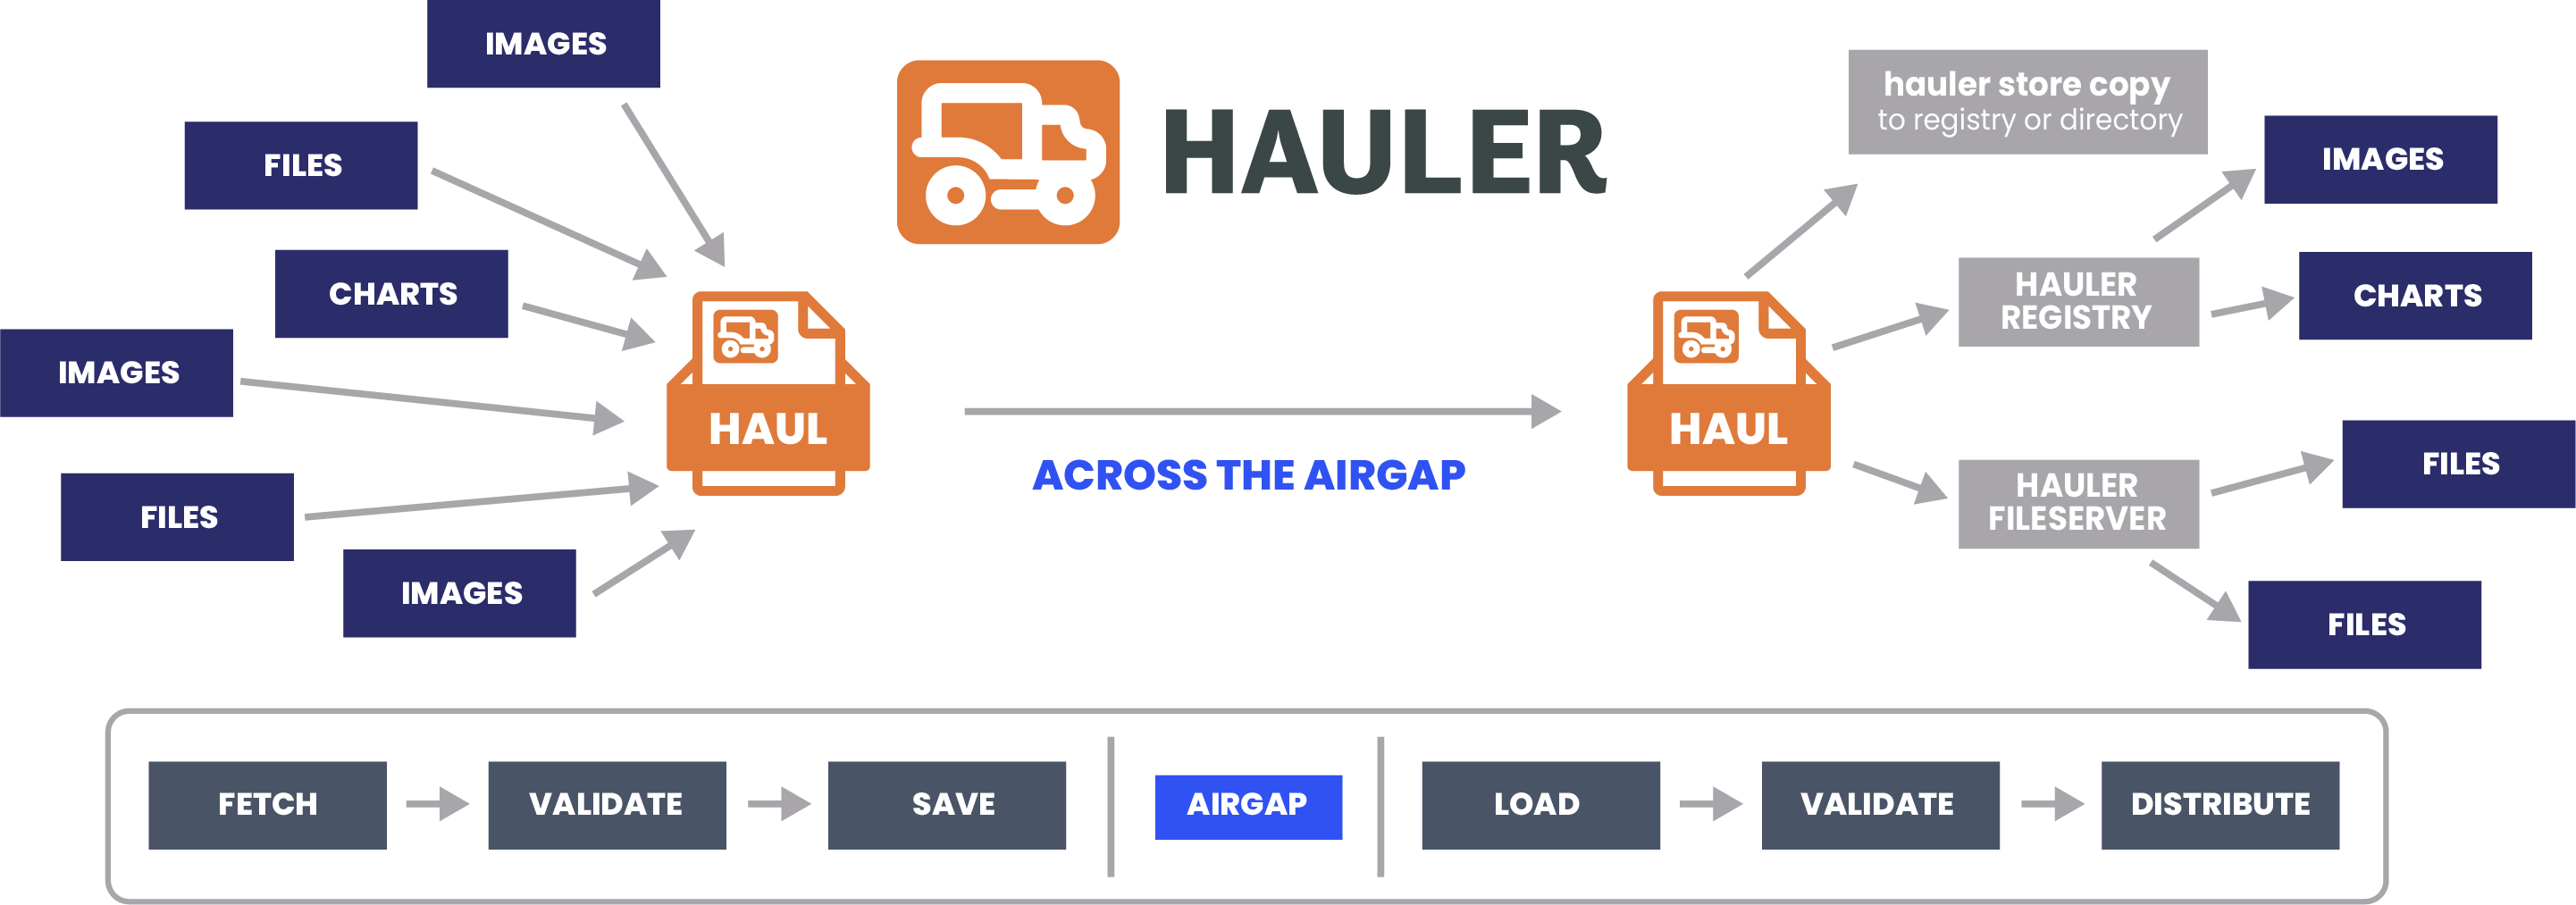 hauler-workflow-diagram